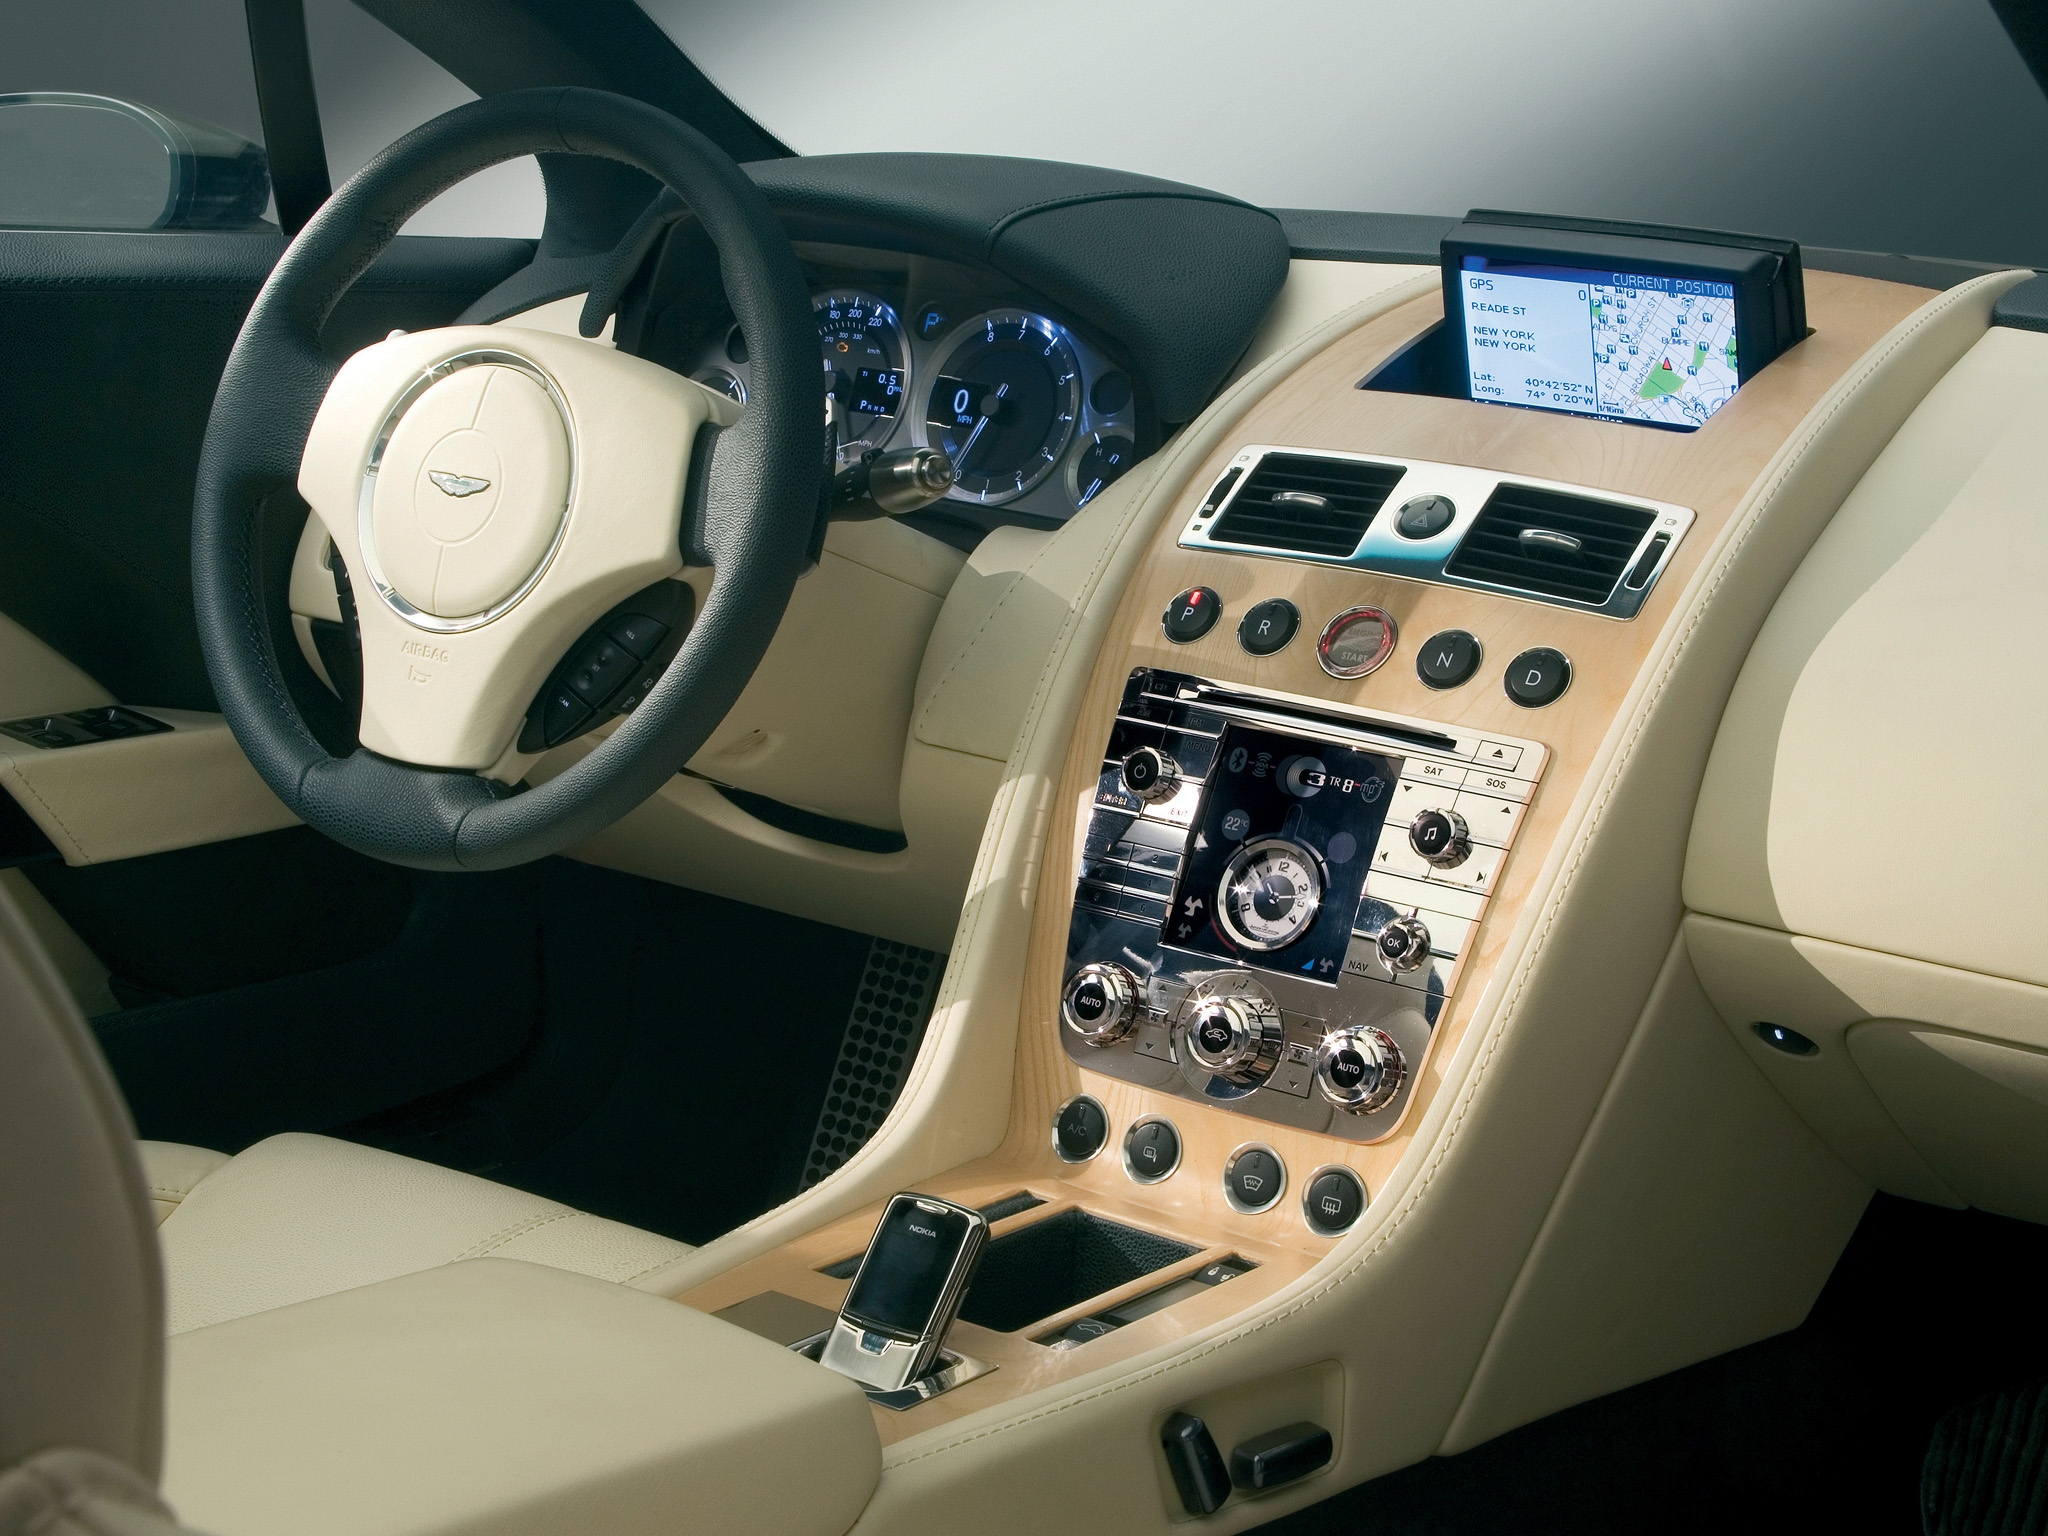 2006 steering wheel, rudder, concept car, cars 8k Backgrounds